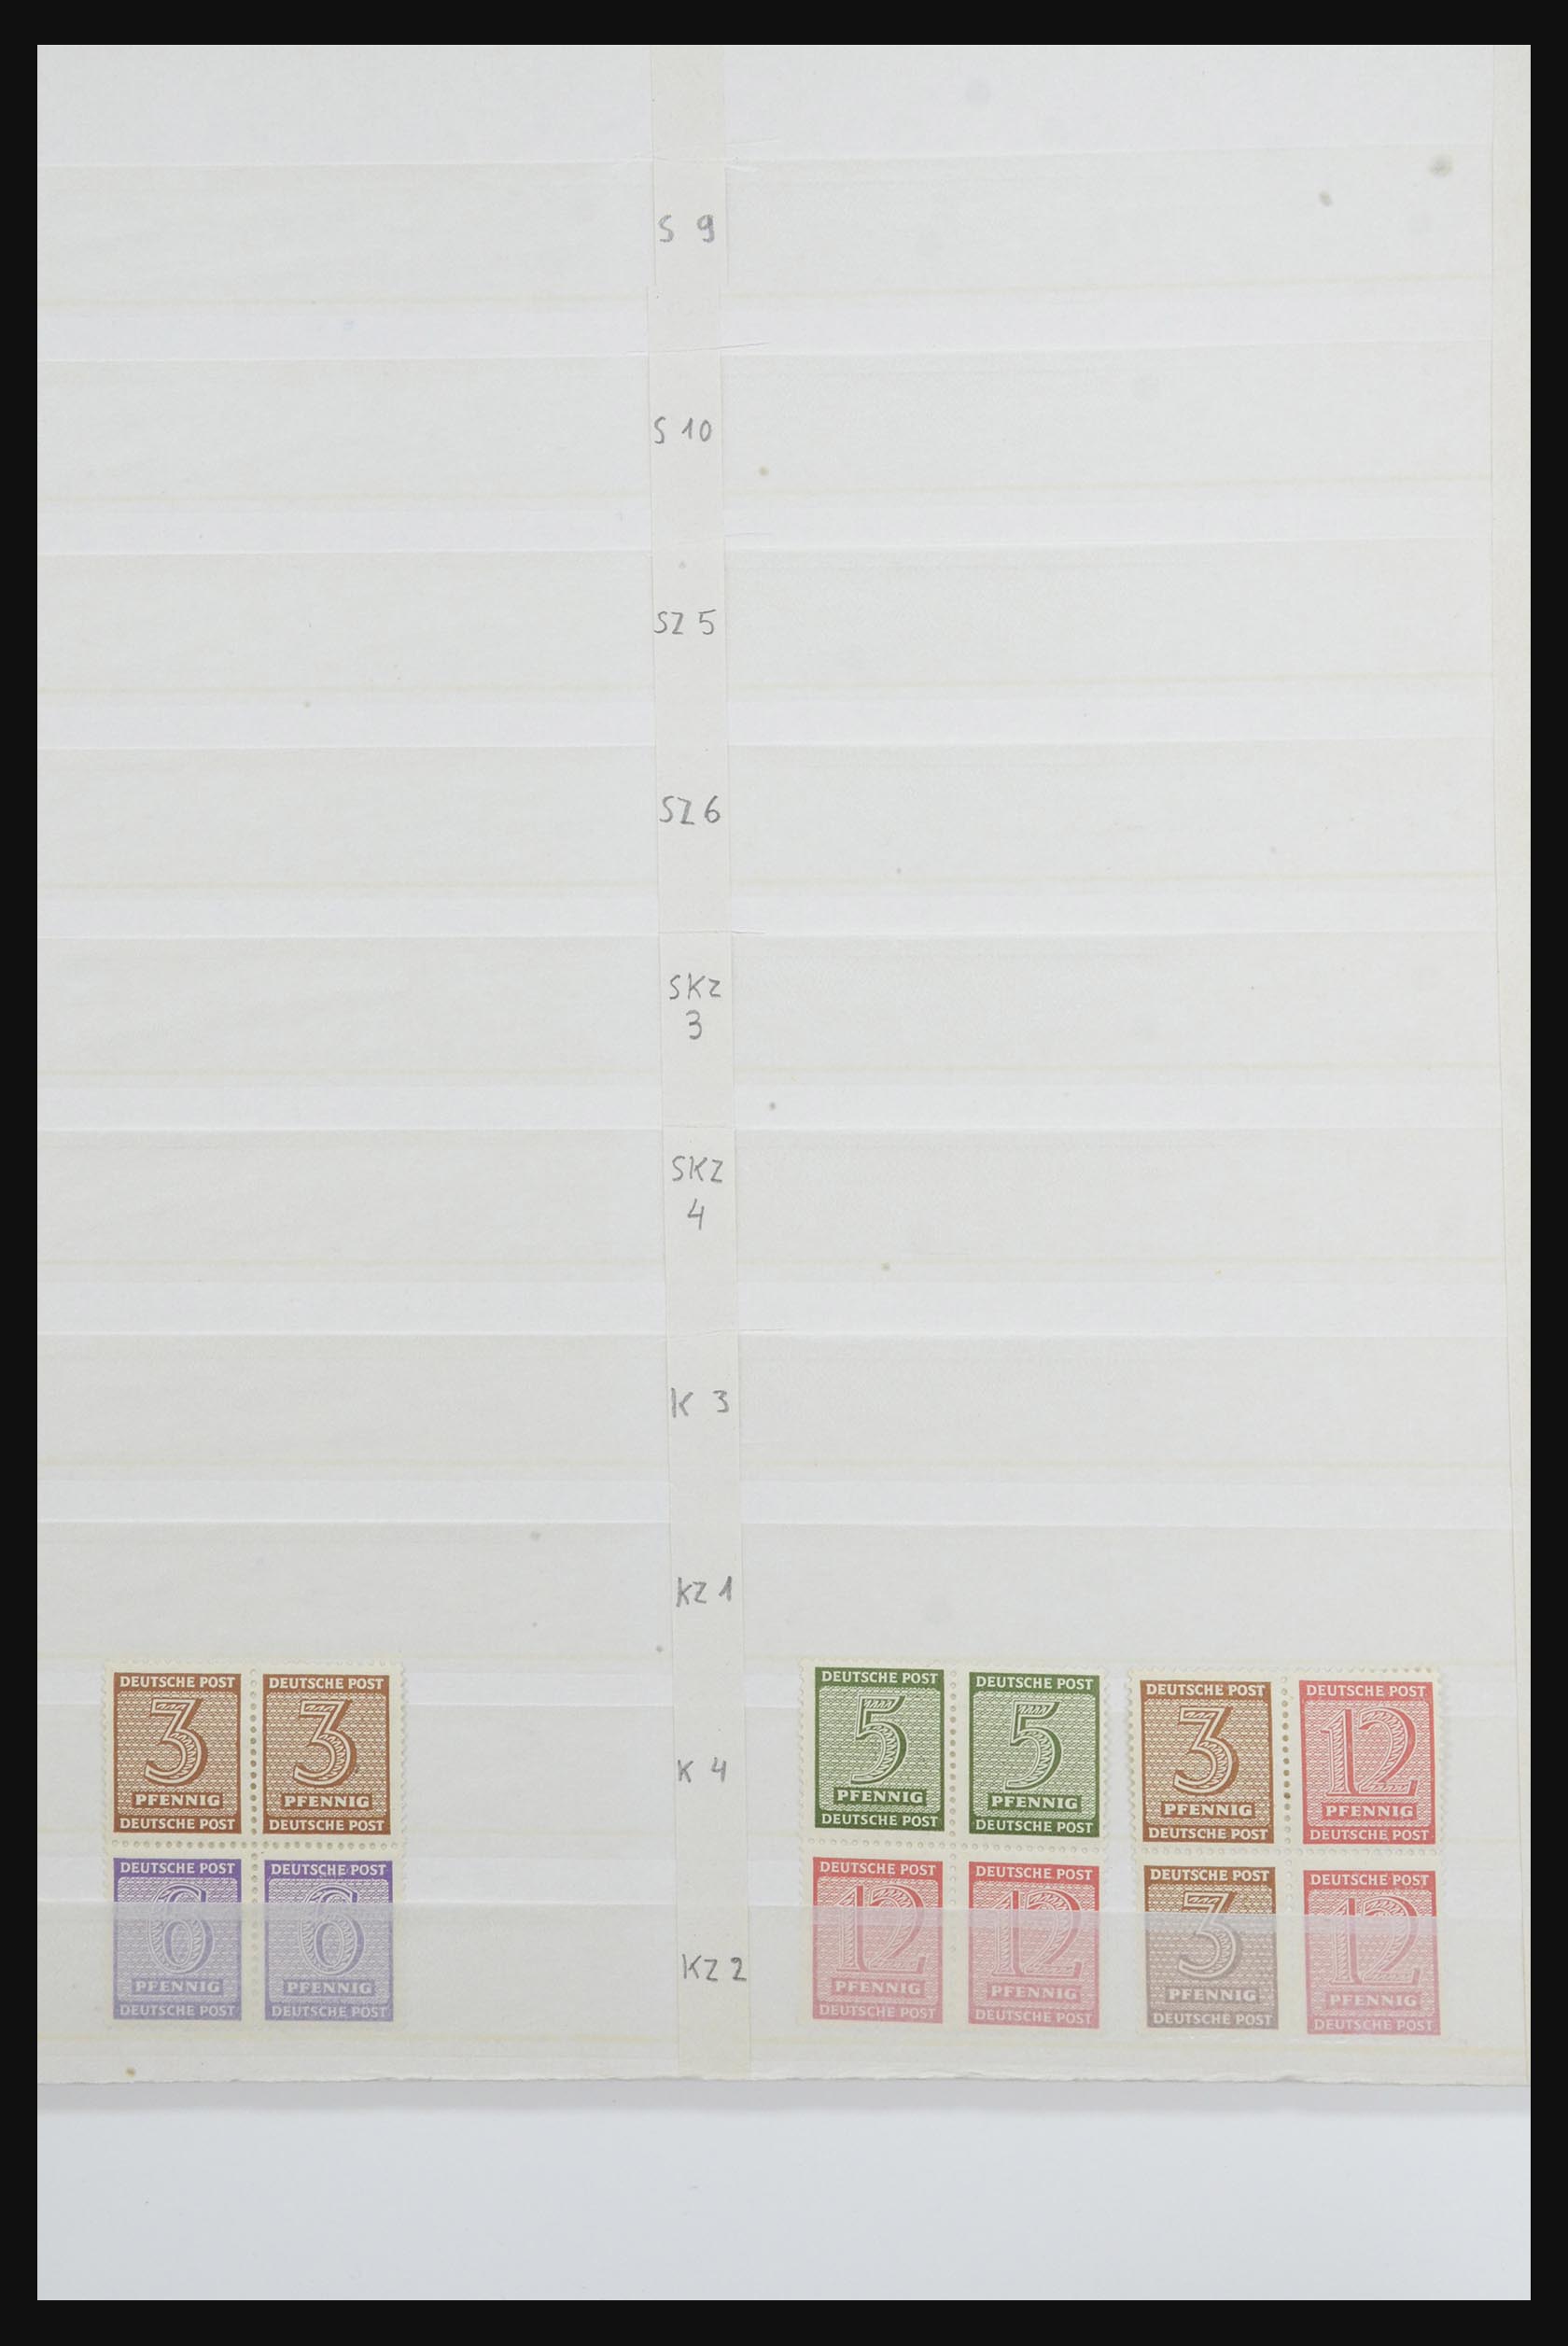 31884 077 - 31884 Duitsland combinaties 1920-1980.